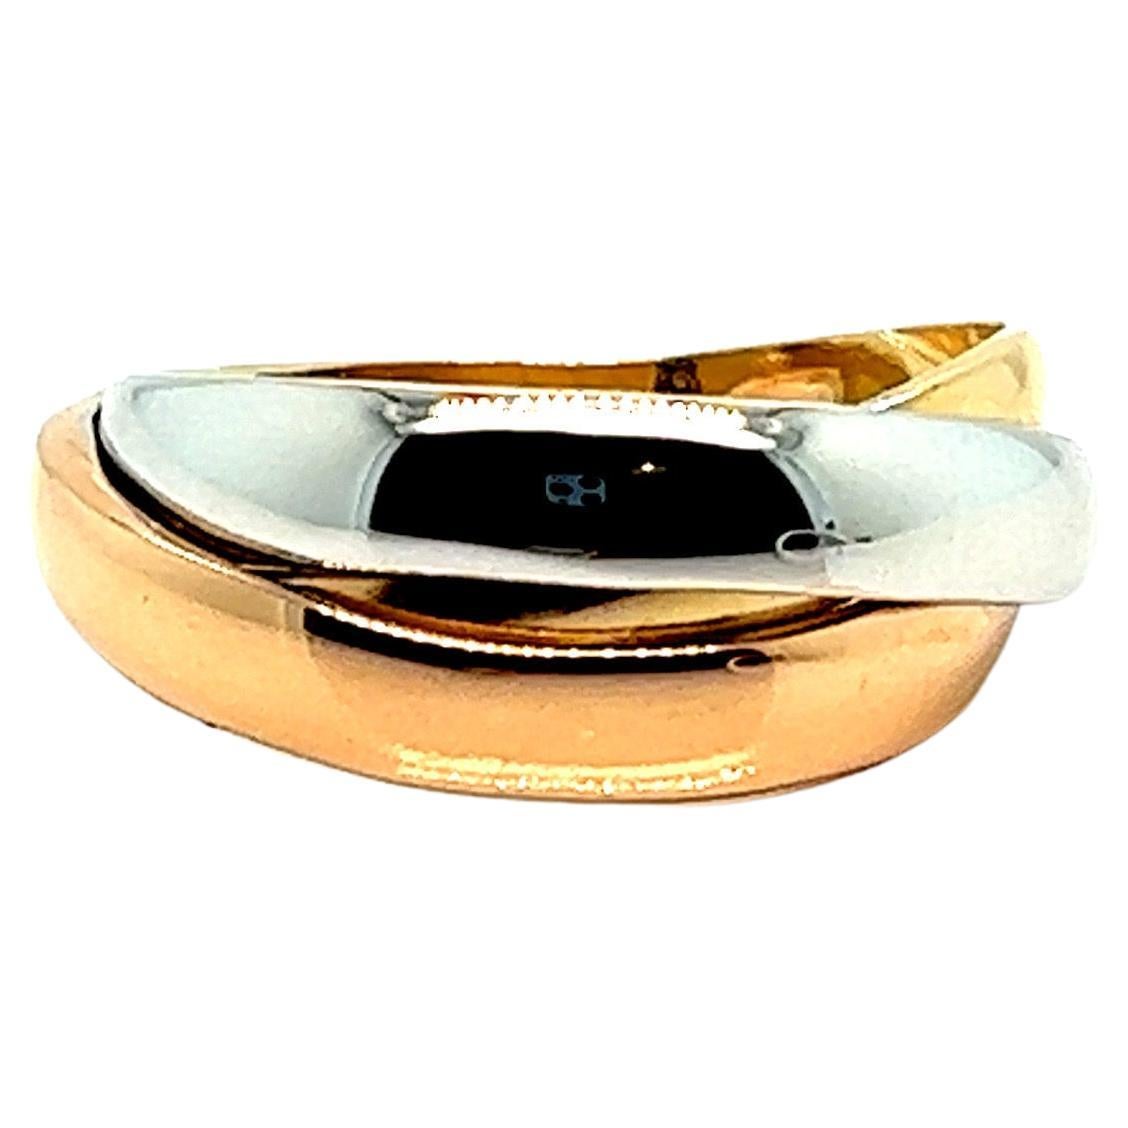 Entdecken Sie diesen prächtigen französischen Ring aus 3 Goldarten, ein wahrhaft zeitloses Meisterwerk aus 18-karätigem Gold. Dieses außergewöhnliche Stück verkörpert Eleganz und Raffinesse und ist in drei Farbvarianten erhältlich: Gelbgold,